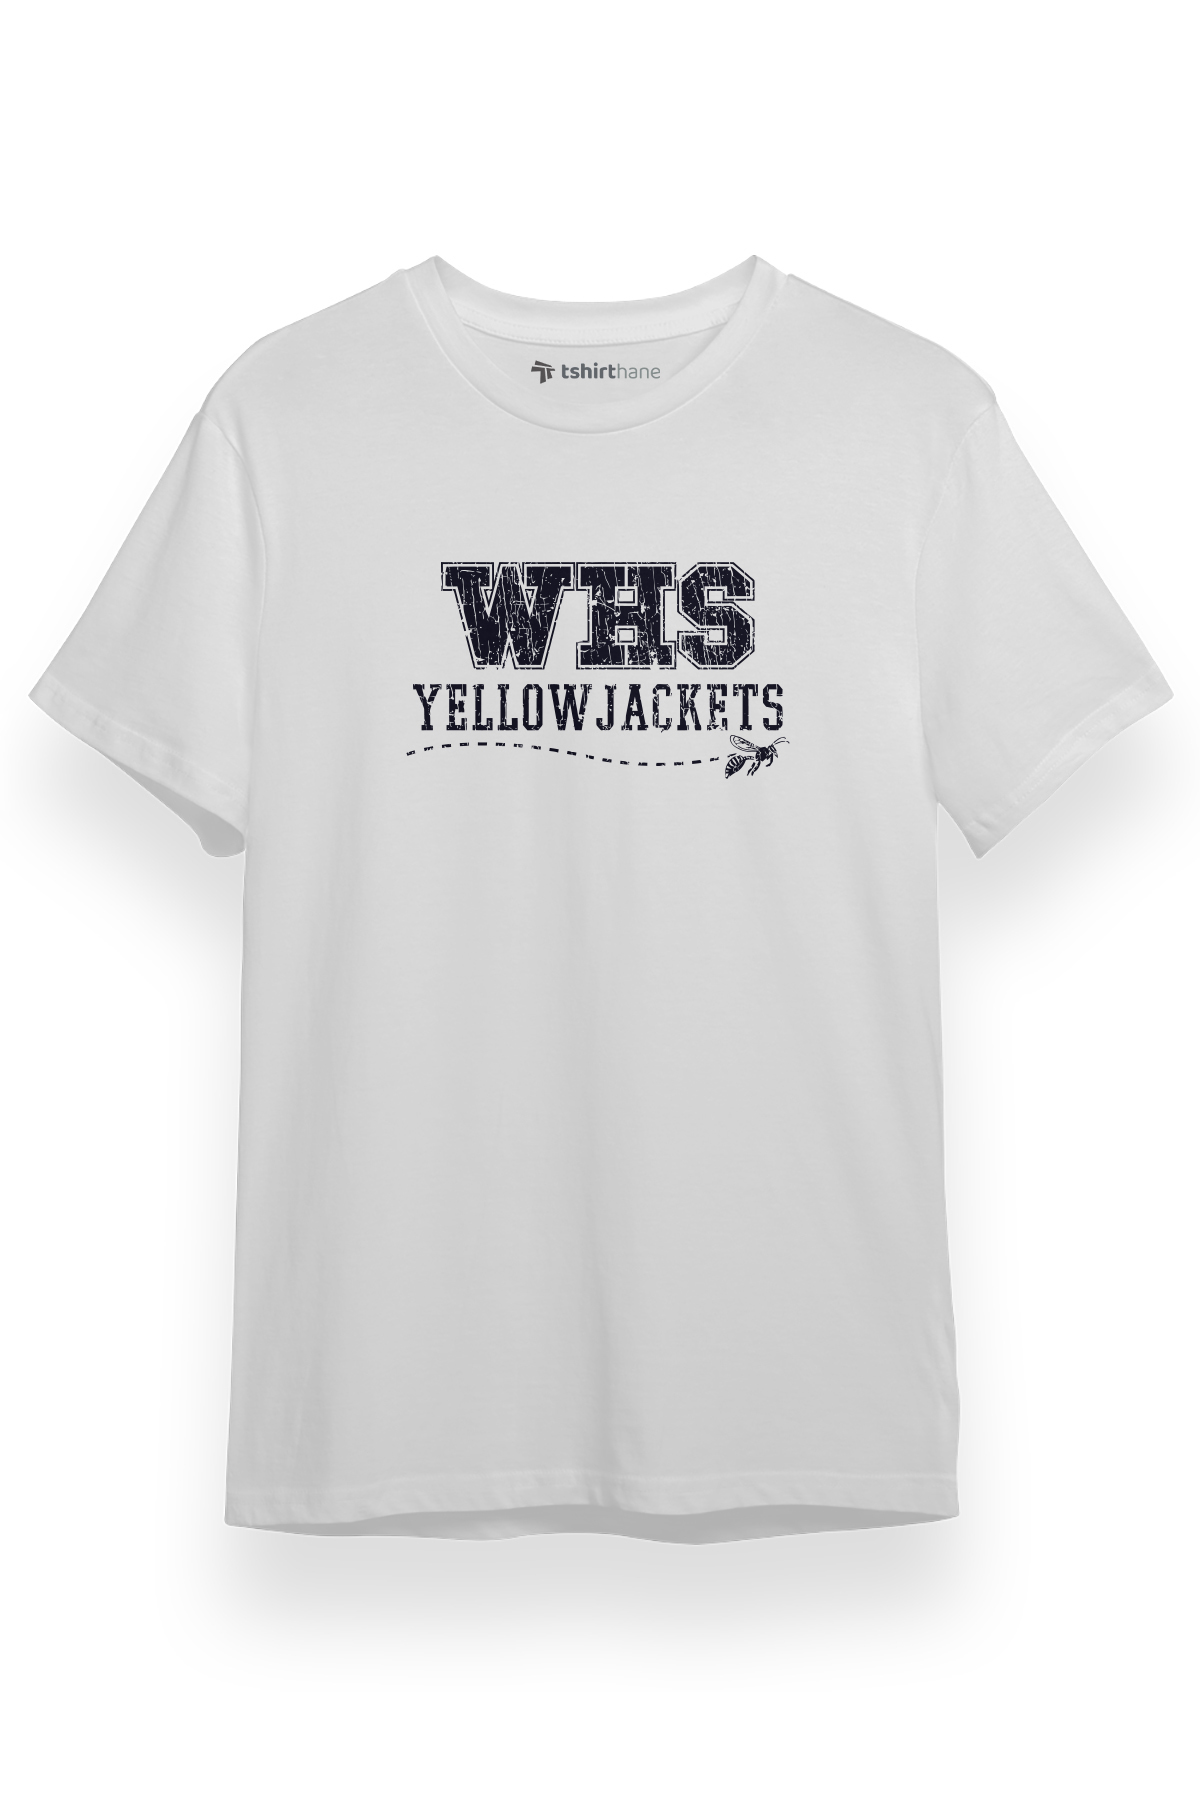 Yellowjackets WHS 1996 Beyaz Kısa kol Erkek Tshirt